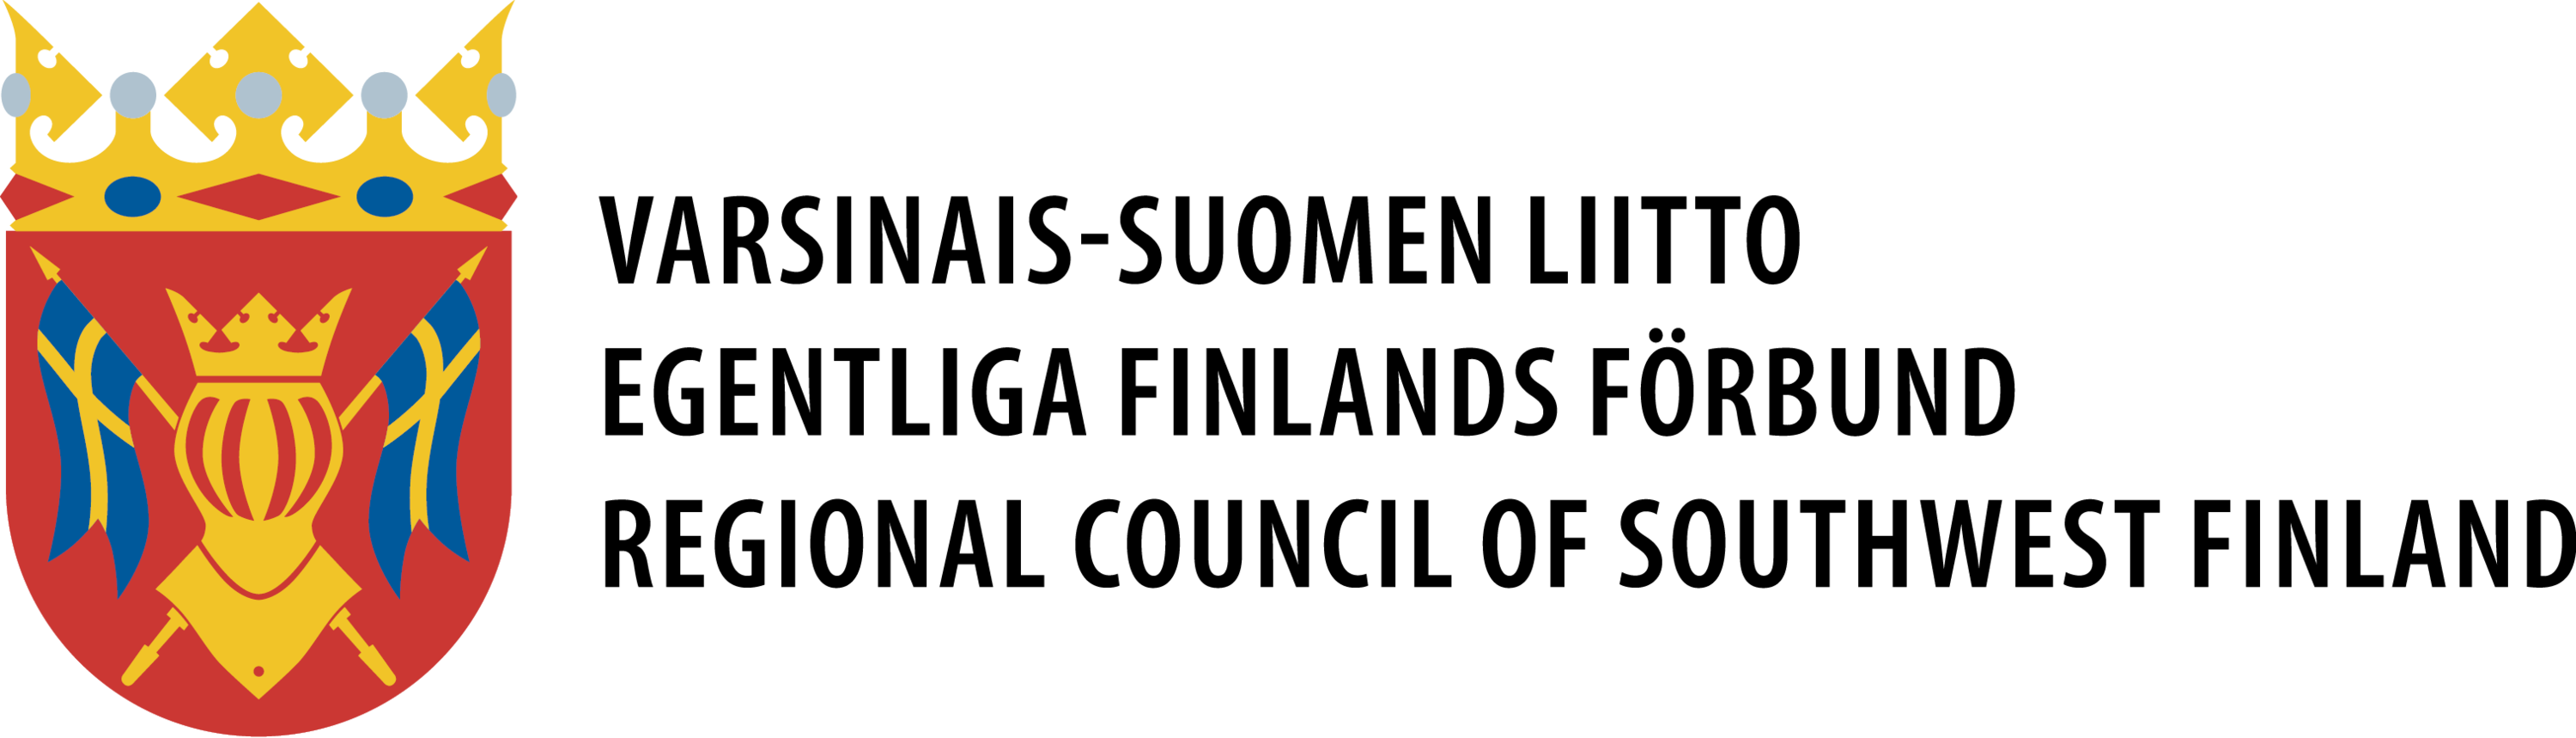 Varsinais-Suomen liitto logo